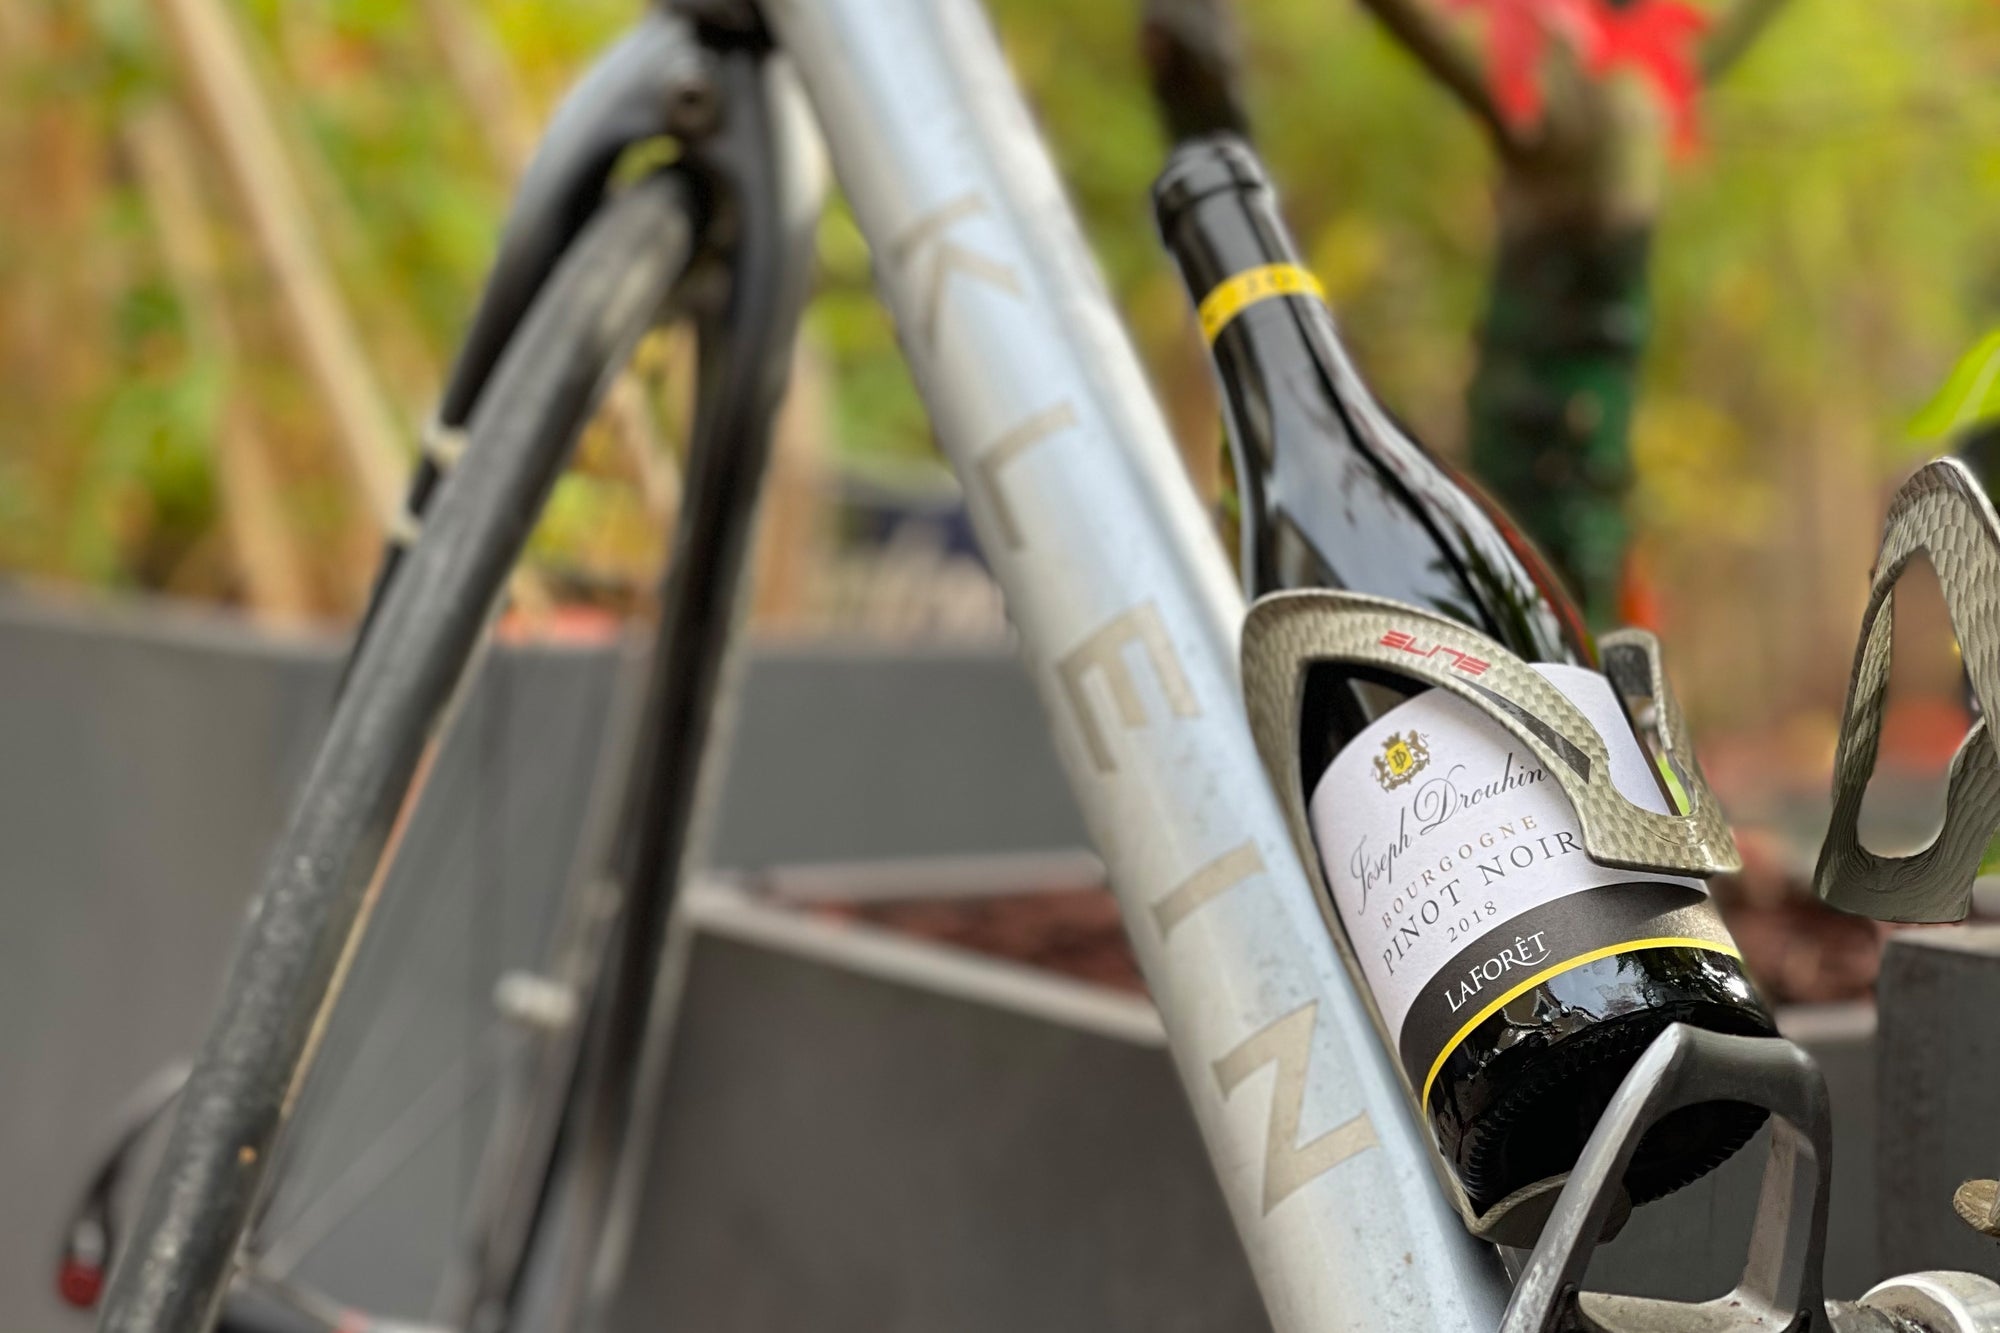 0.375 Liter Halbflasche Rotwein Bourgogne Pinot Noir Laforêt von 2018 steckt in einem Rennradgetränkehalter.